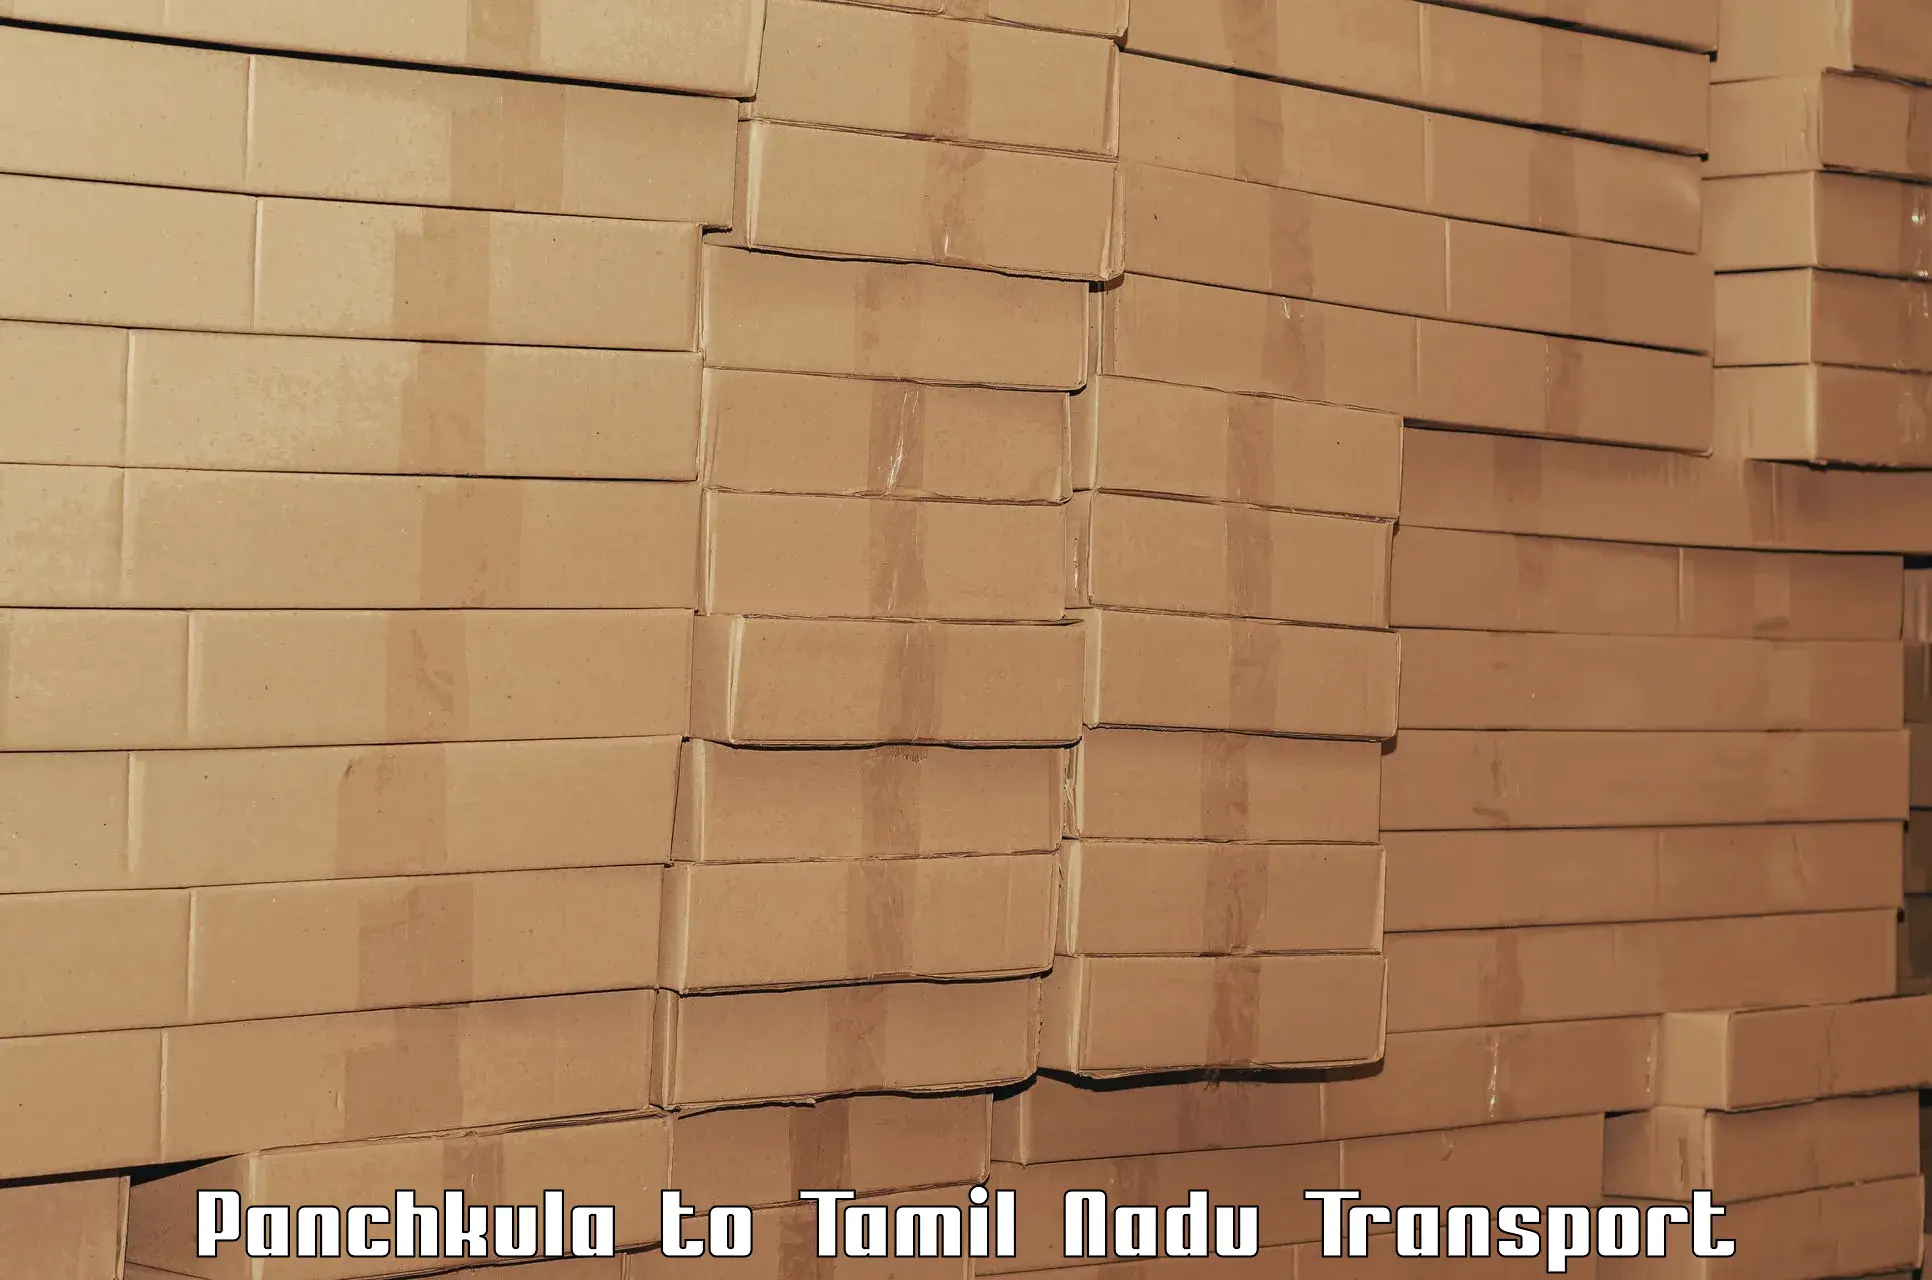 Transport shared services Panchkula to NIT Tiruchirapalli